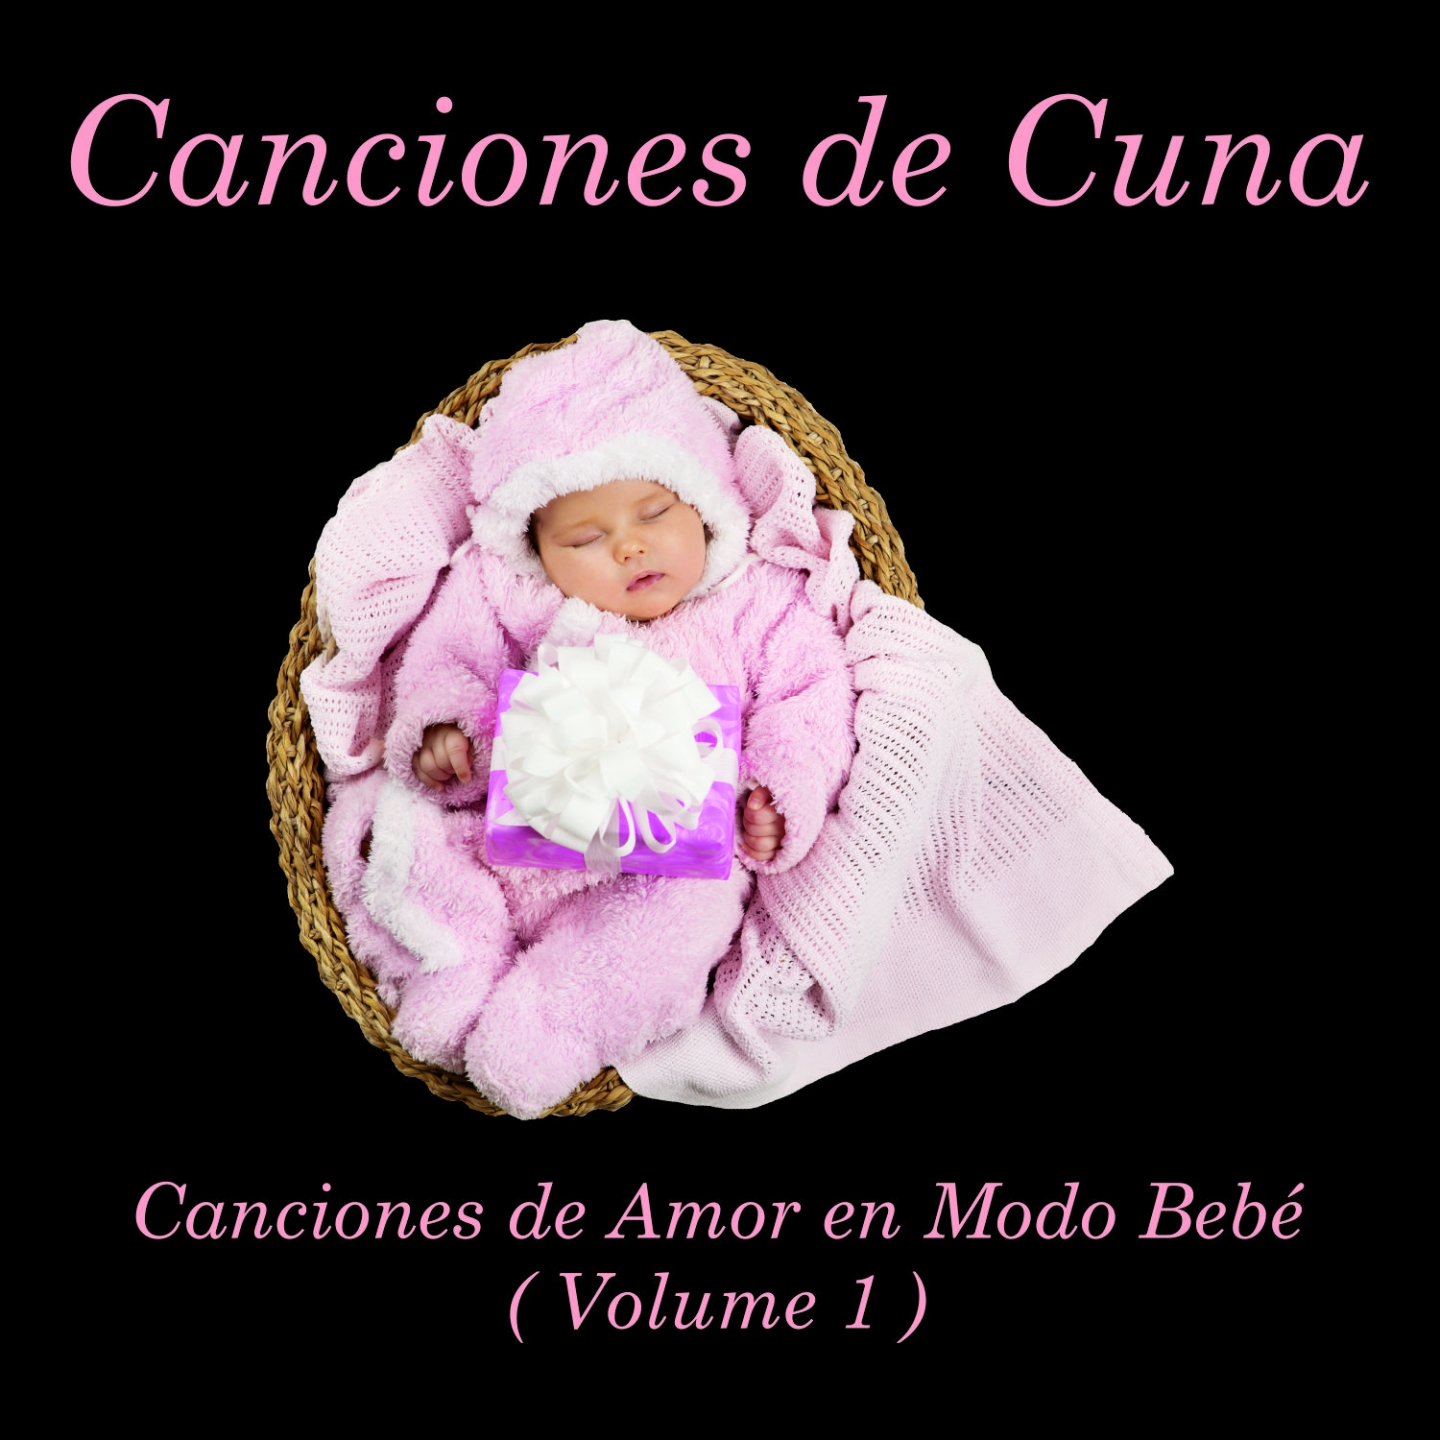 Canciones de Cuna: Canciones de Amor en Modo Bebe